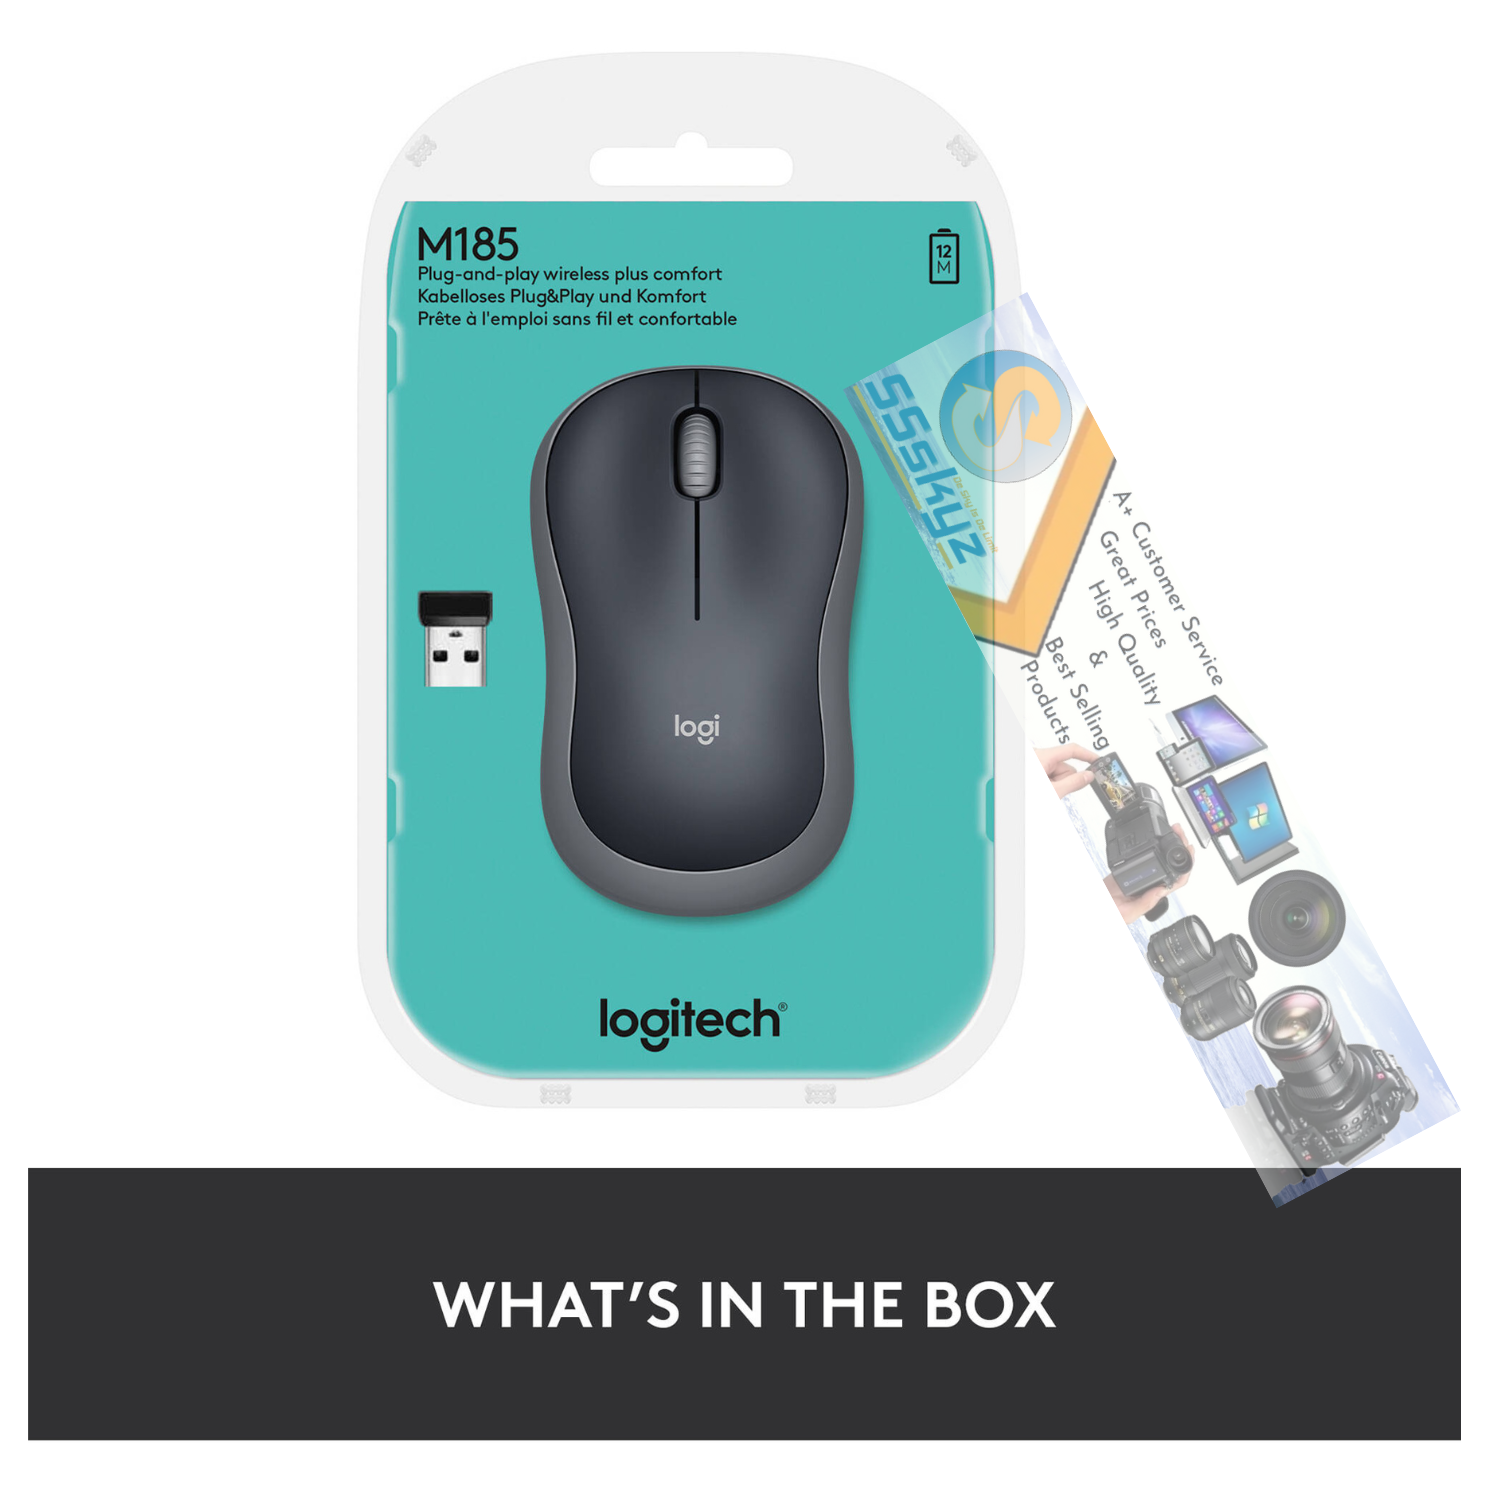 Logitech M185 Wireless USB Optical Mouse - Swift Gray ( 910-002255 )